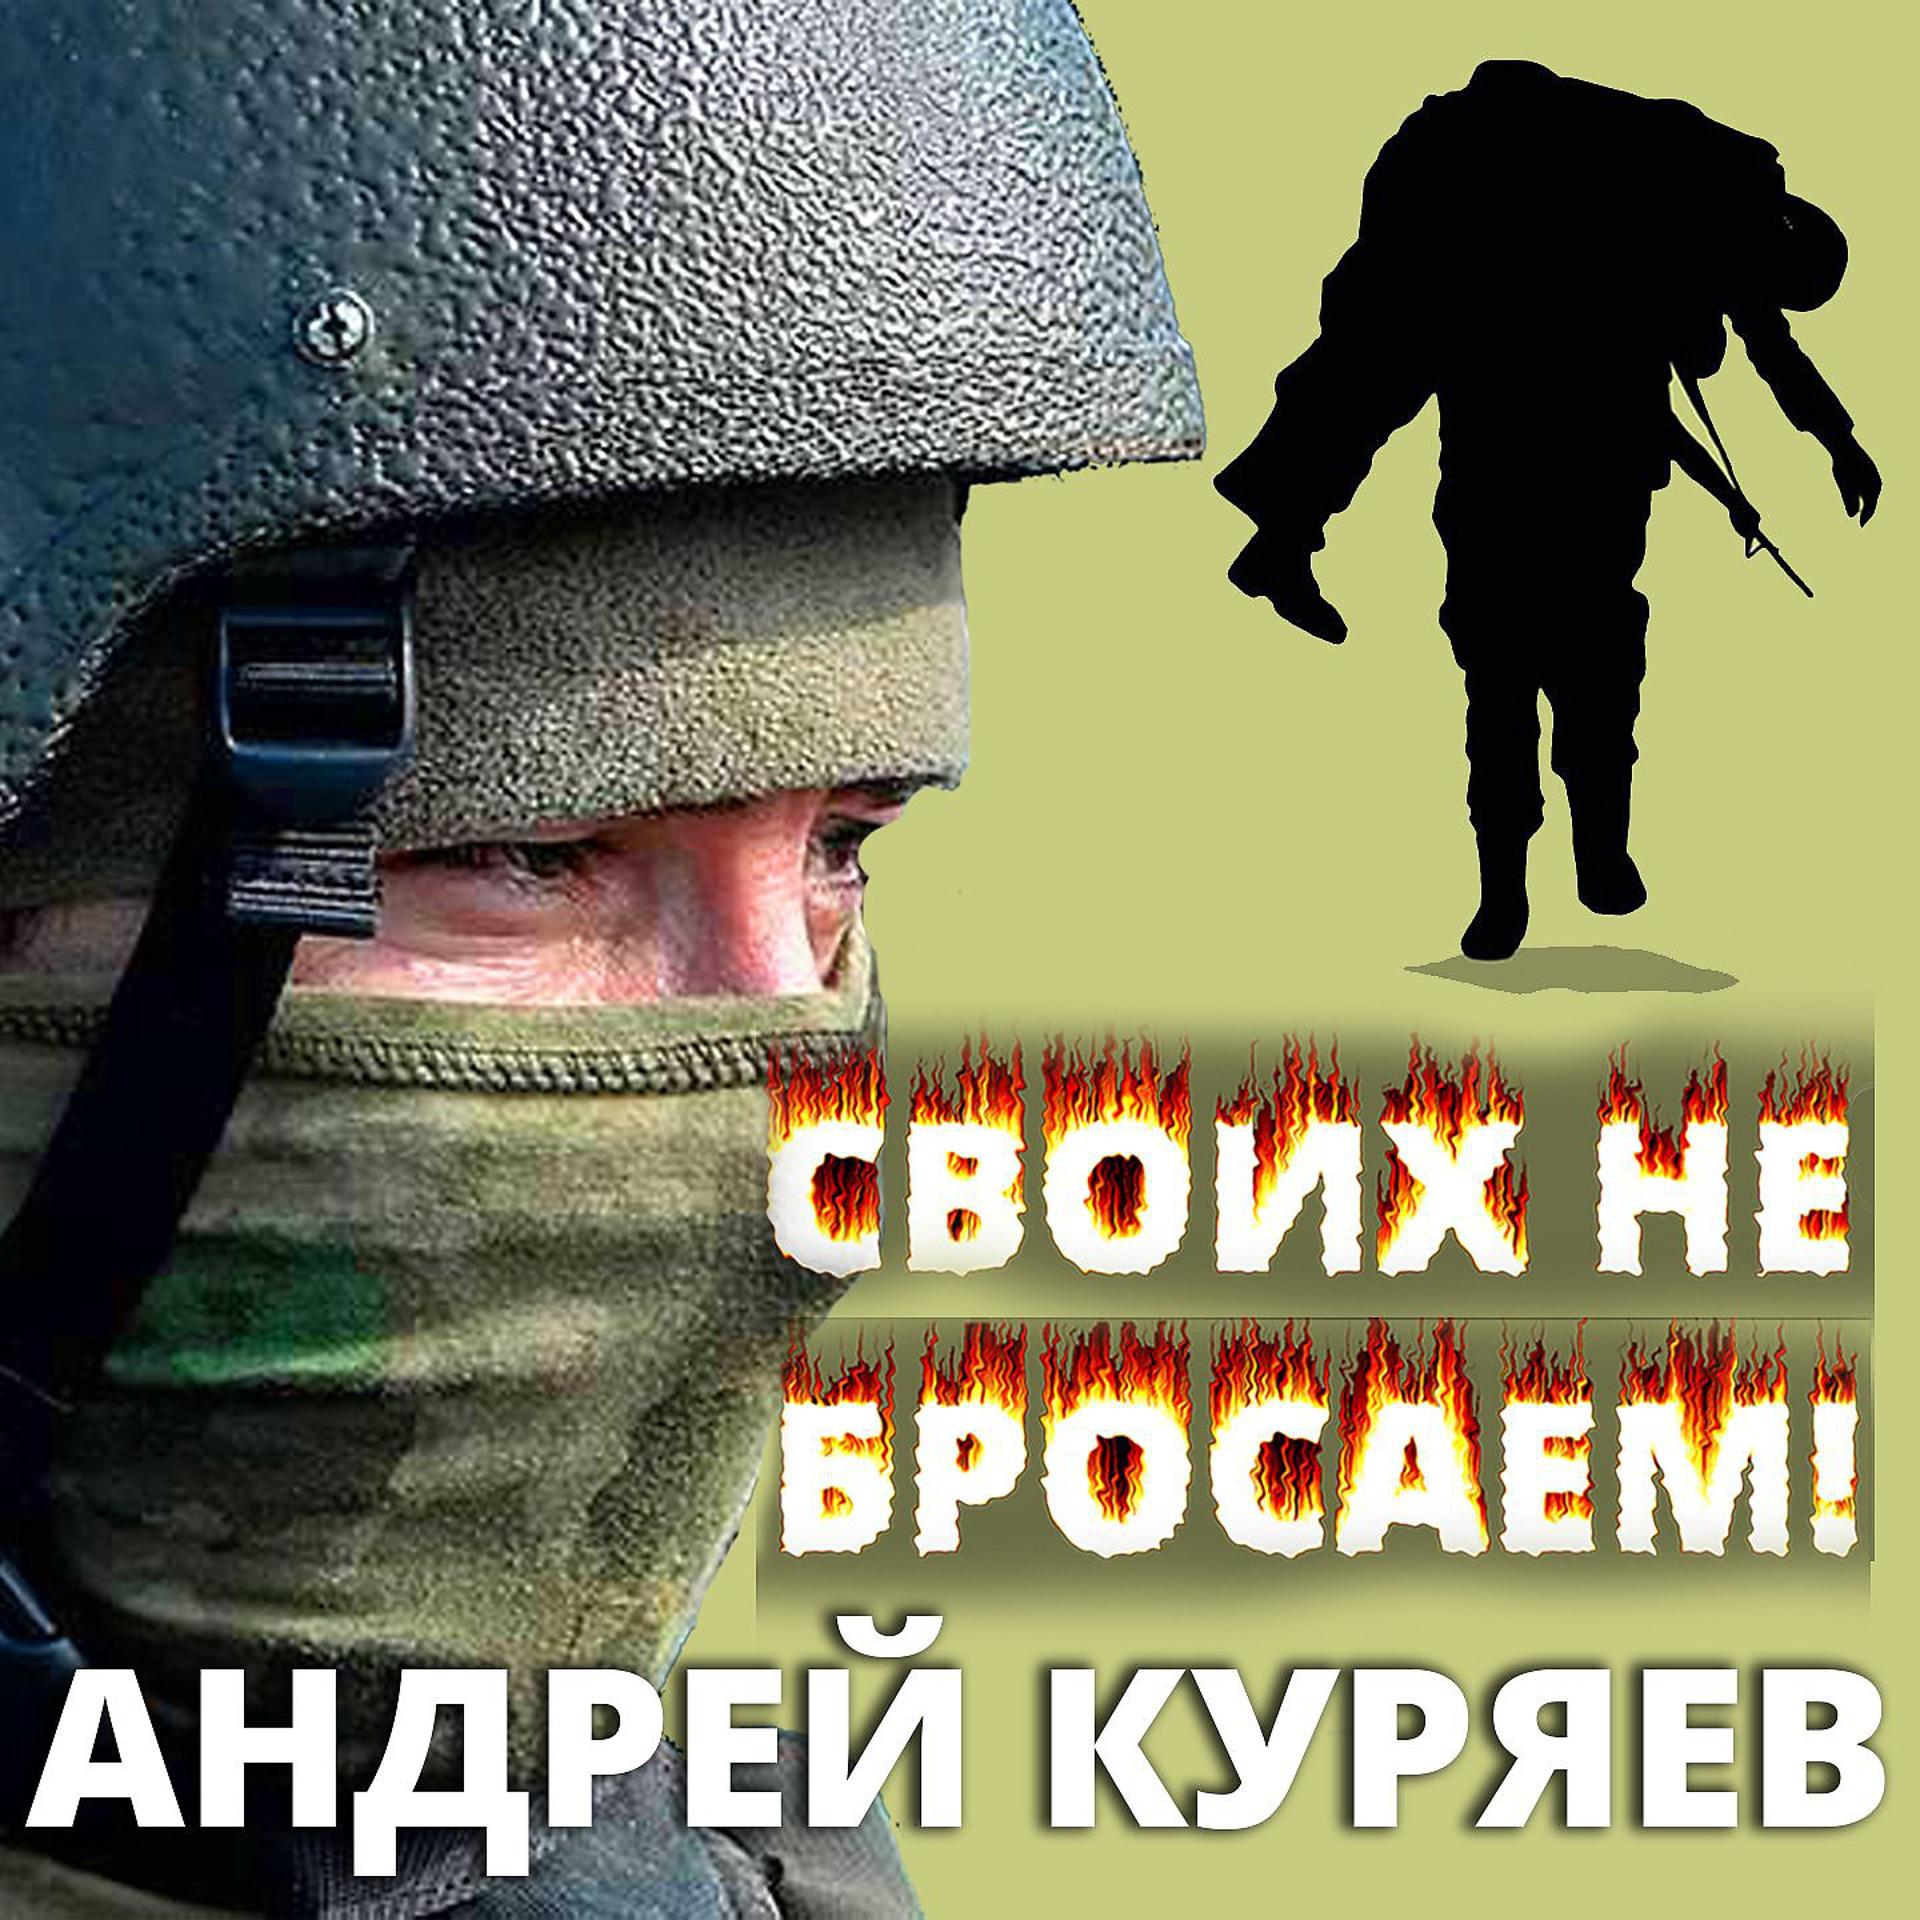 Постер к треку Андрей Куряев - Своих не бросаем